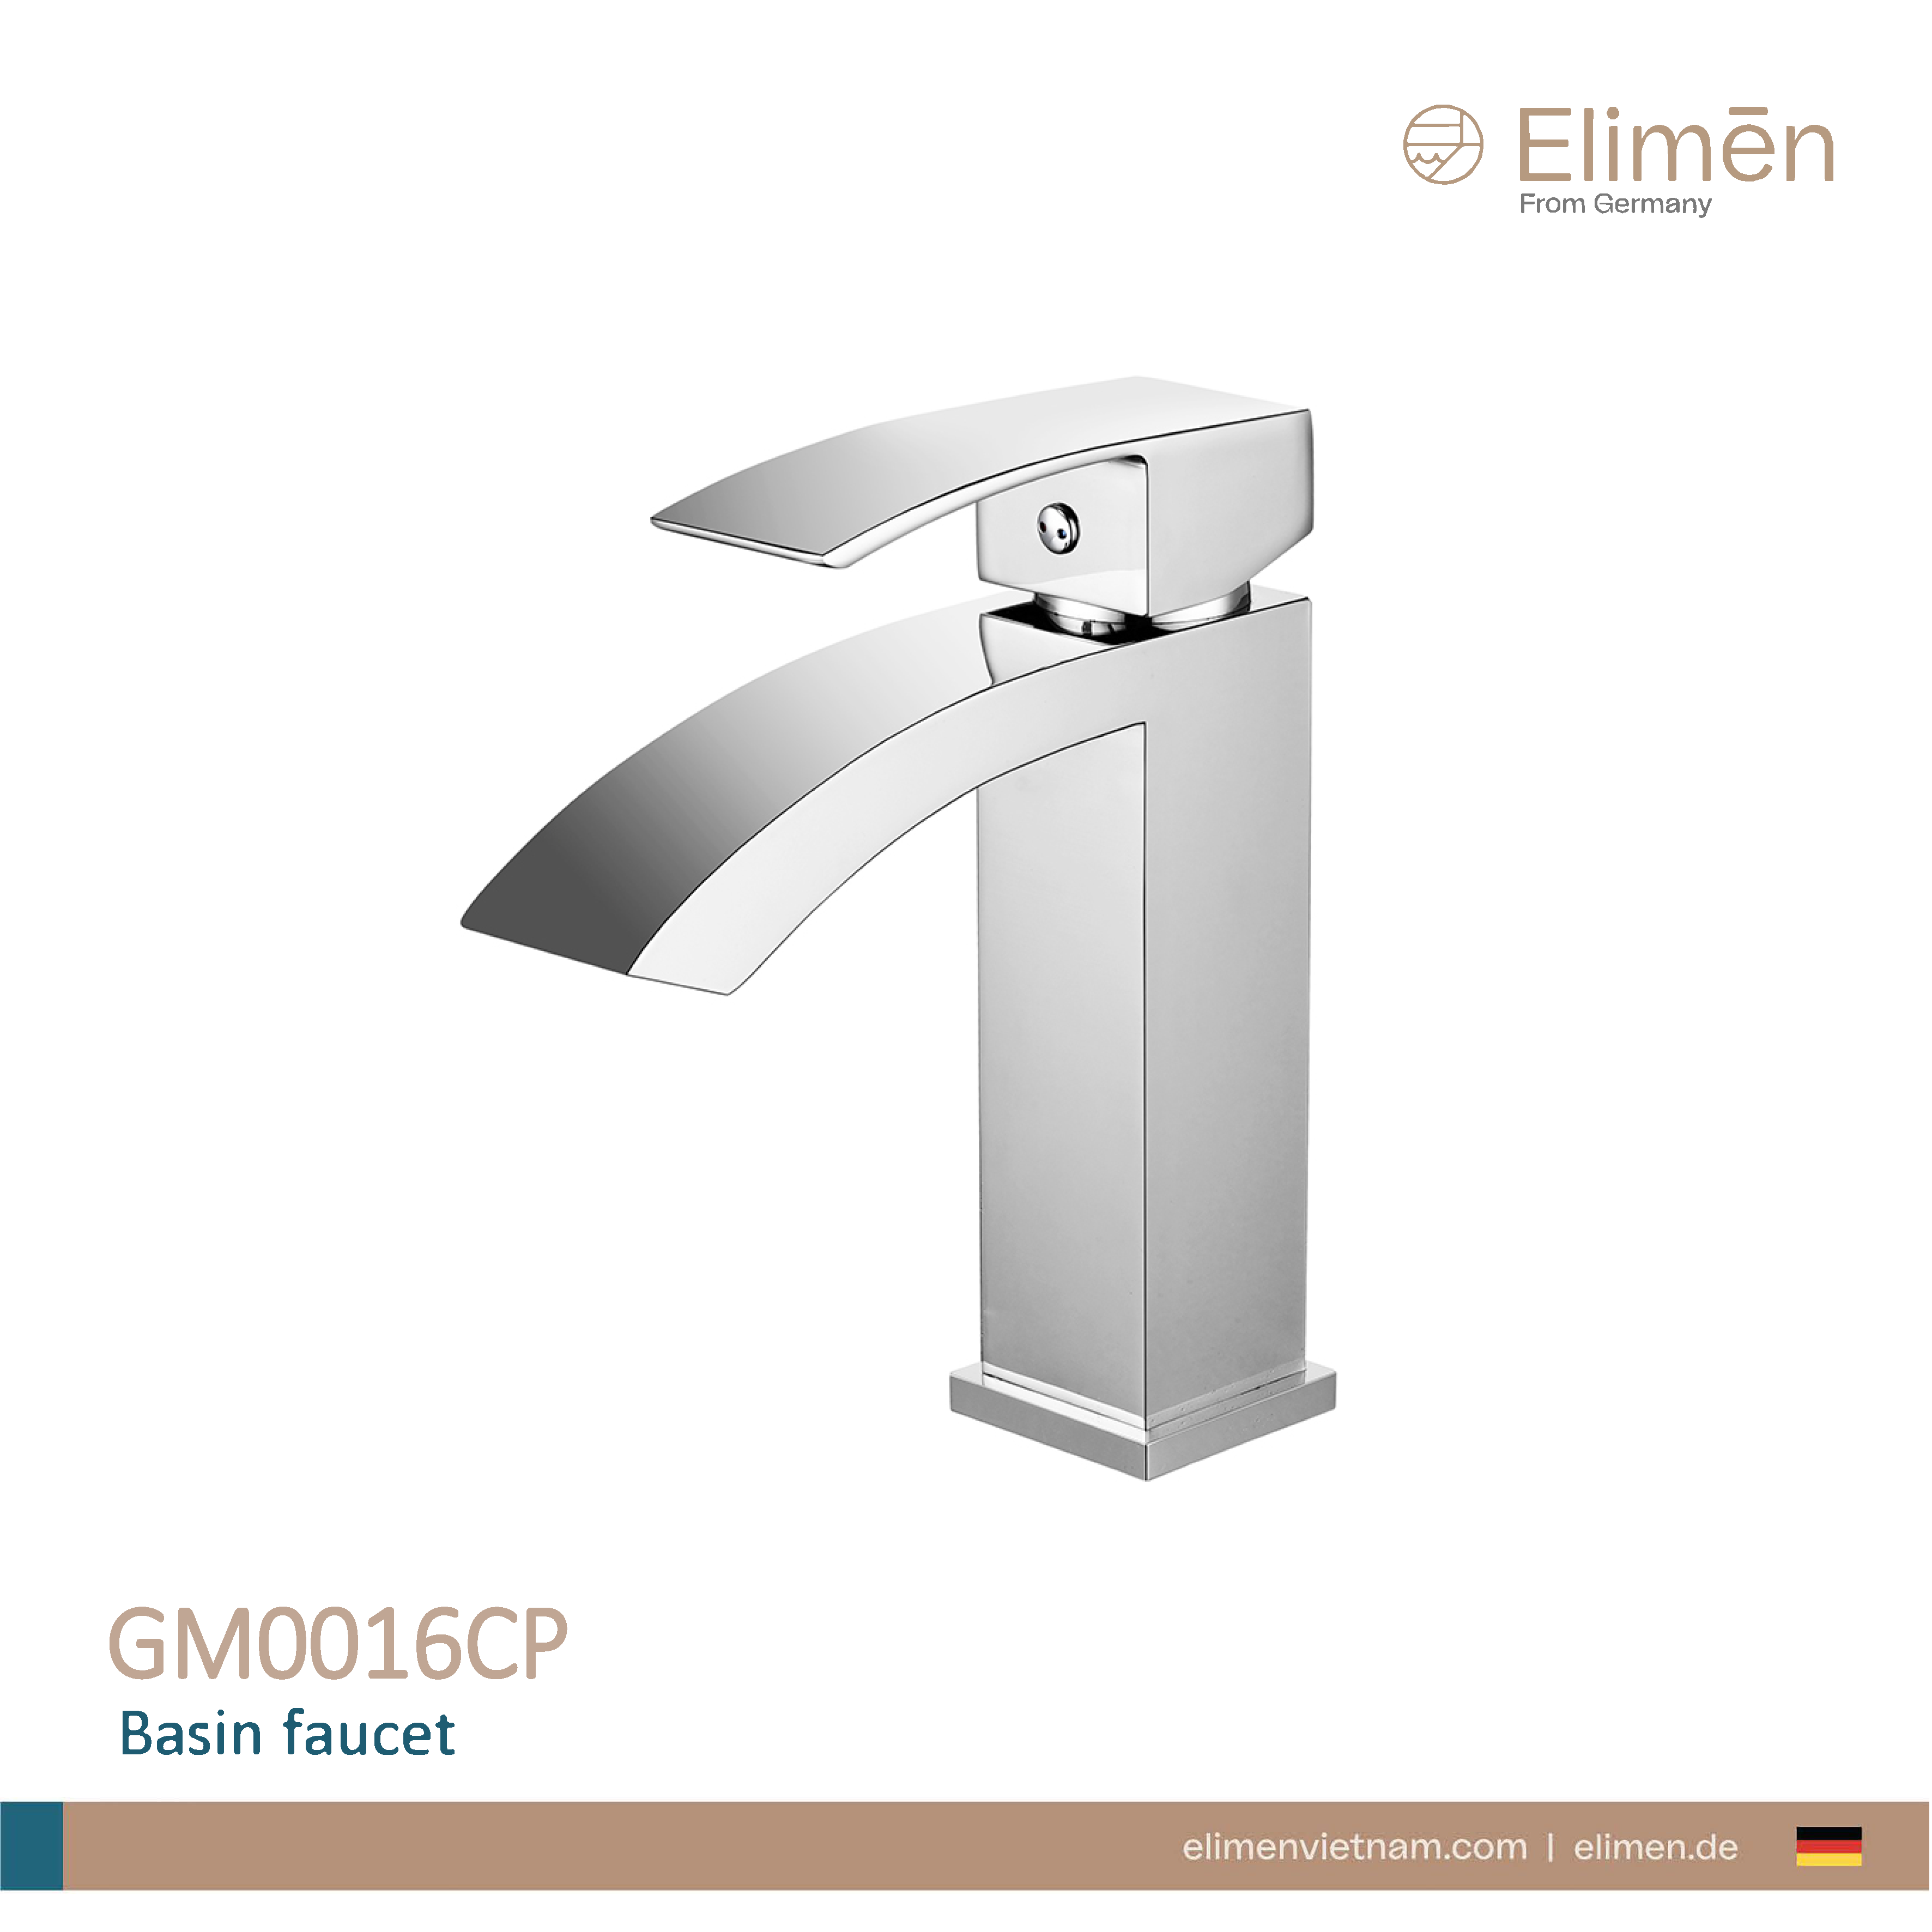 Elimen basin faucet - Code GM0016CP